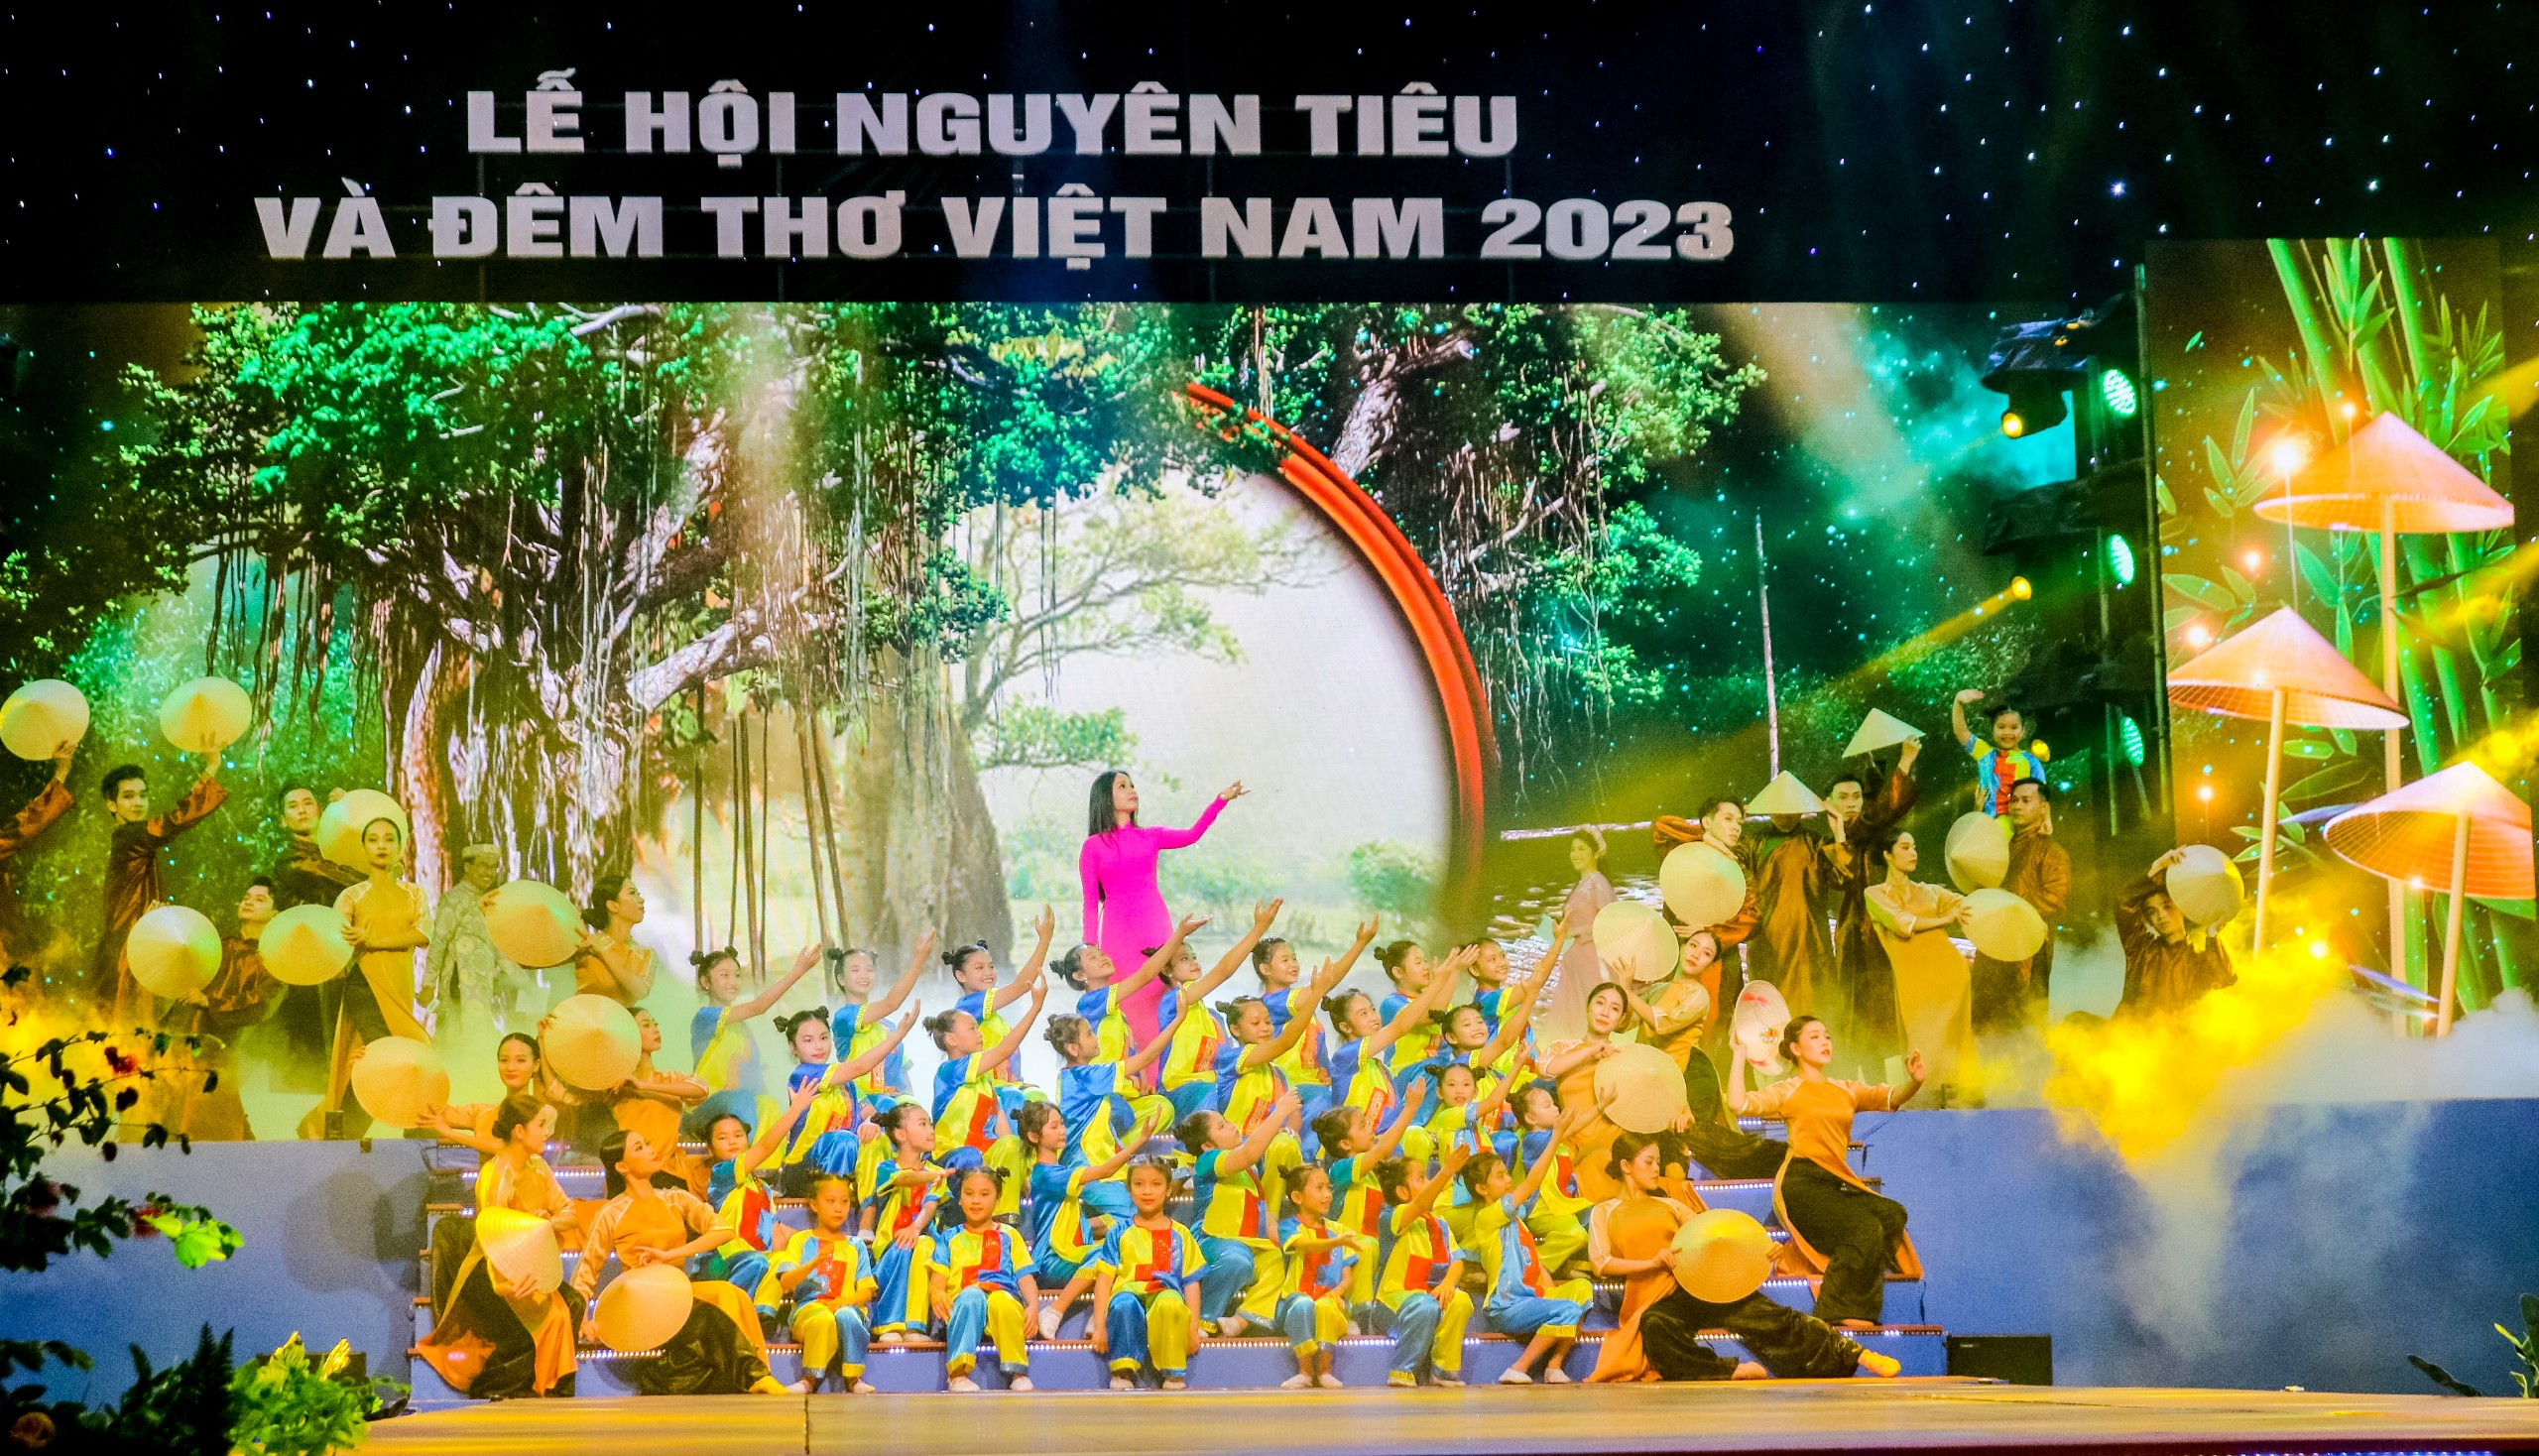 Bồi hồi với những tác phẩm thơ ca lắng đọng trong Đêm thơ Việt Nam 2023 - 9